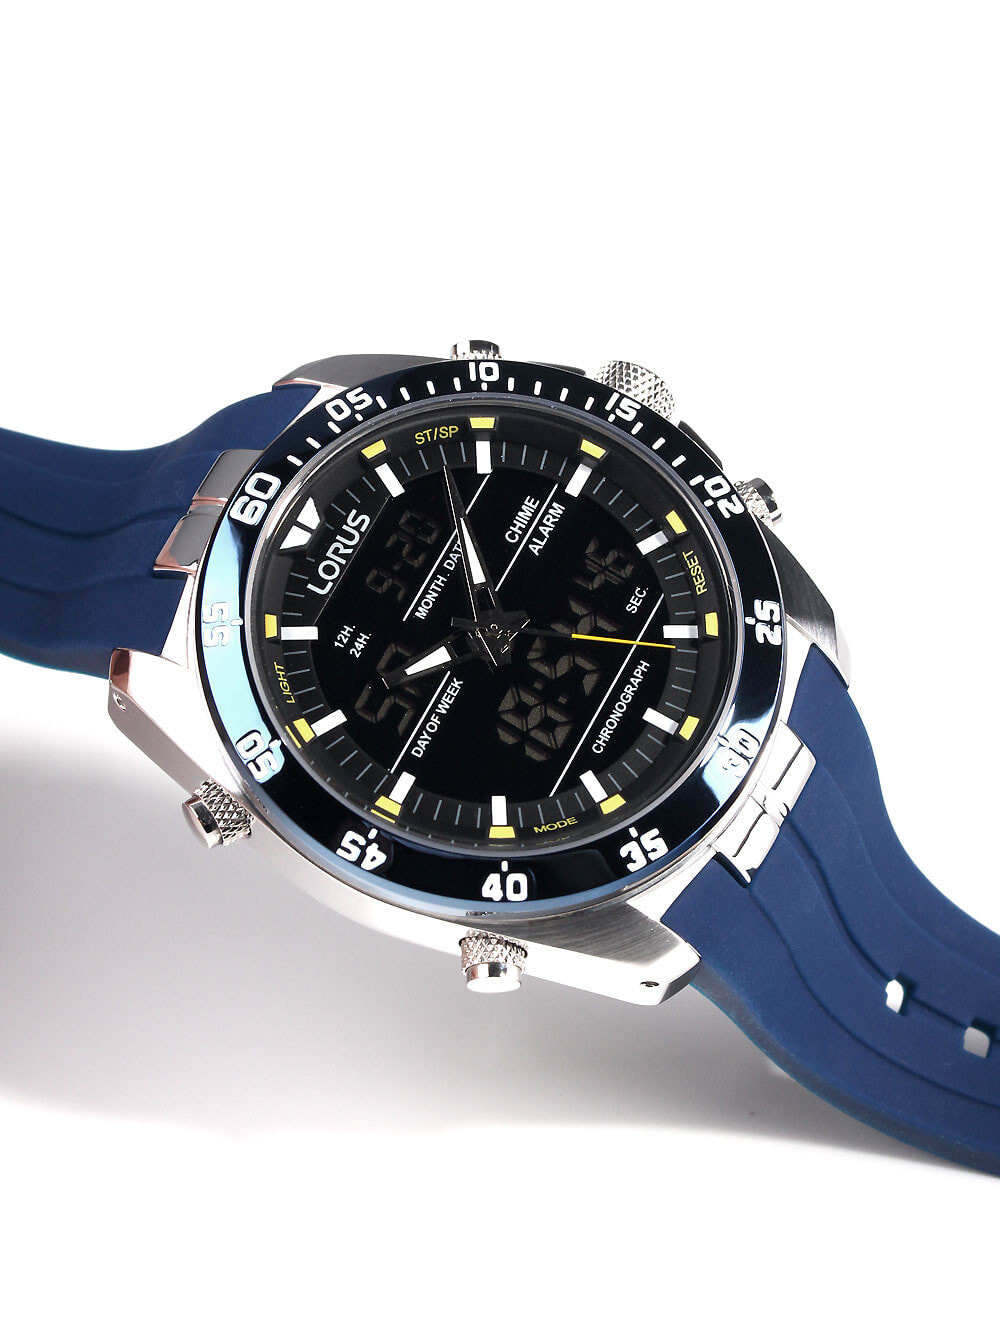 недорого Мужские купить Analog-Digital часы с 100M с — Chronograph 46mm Lorus синим доставкой, силиконовым наручные 6761219 Alarm RW617AX9 ремешком